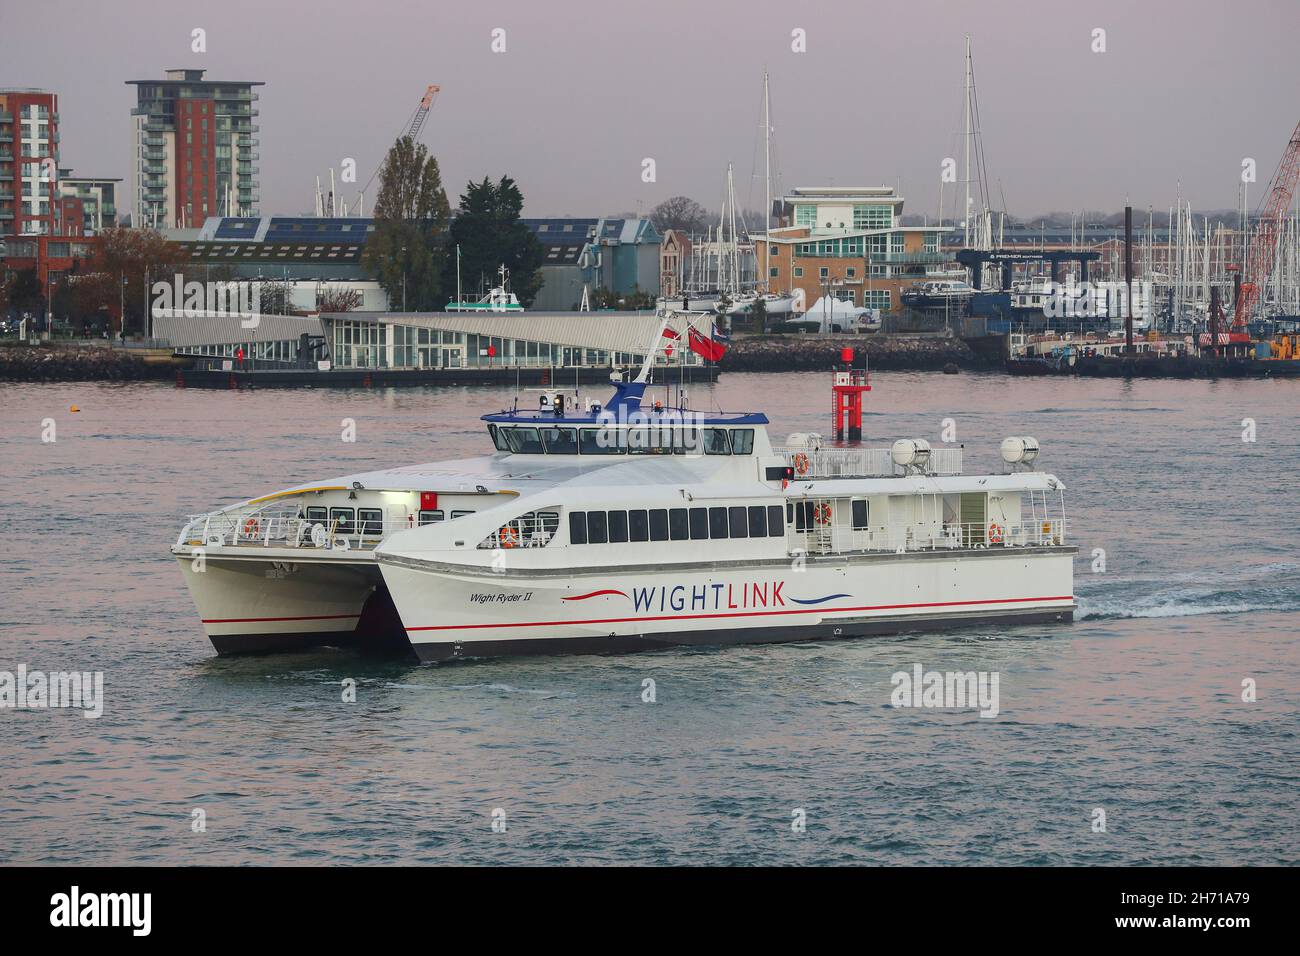 El catamarán rápido Wight Link, Wight Rider II, que sale de Portsmouth en dirección a Ryde en la Isla de Wight. Foto de stock